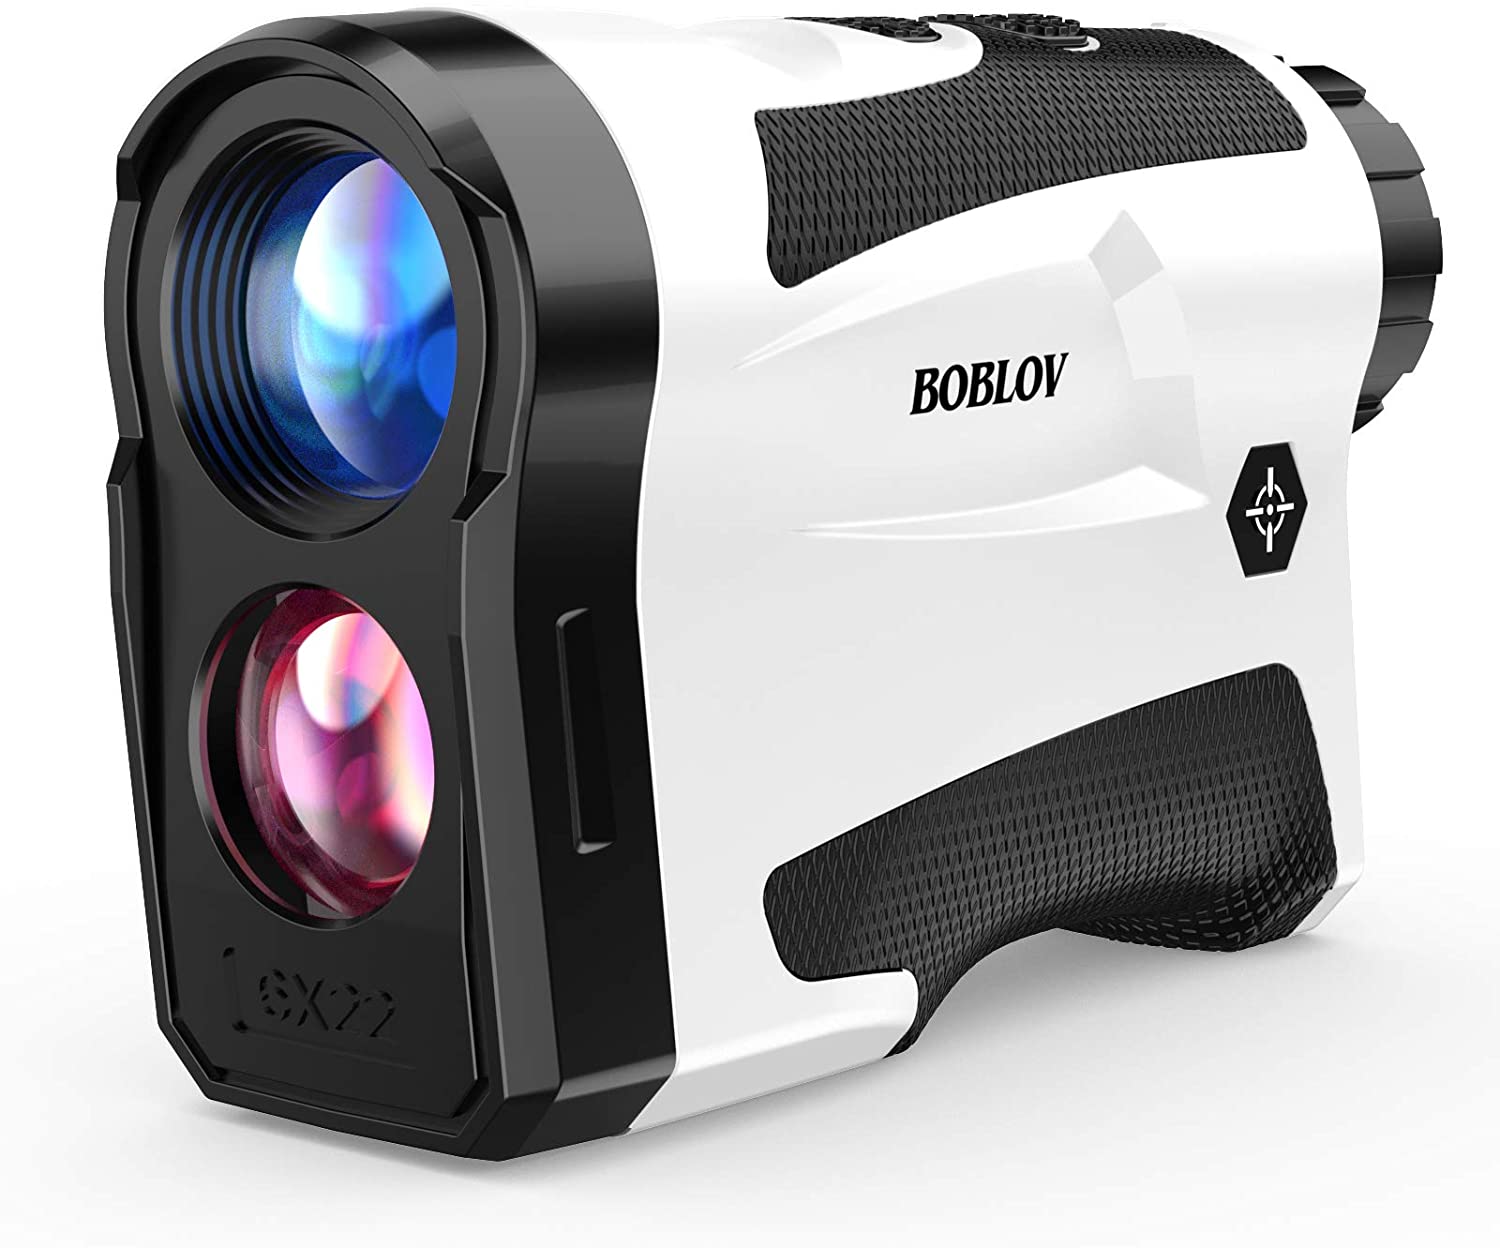 BOBLOV Laser 3-Mode Rangefinder